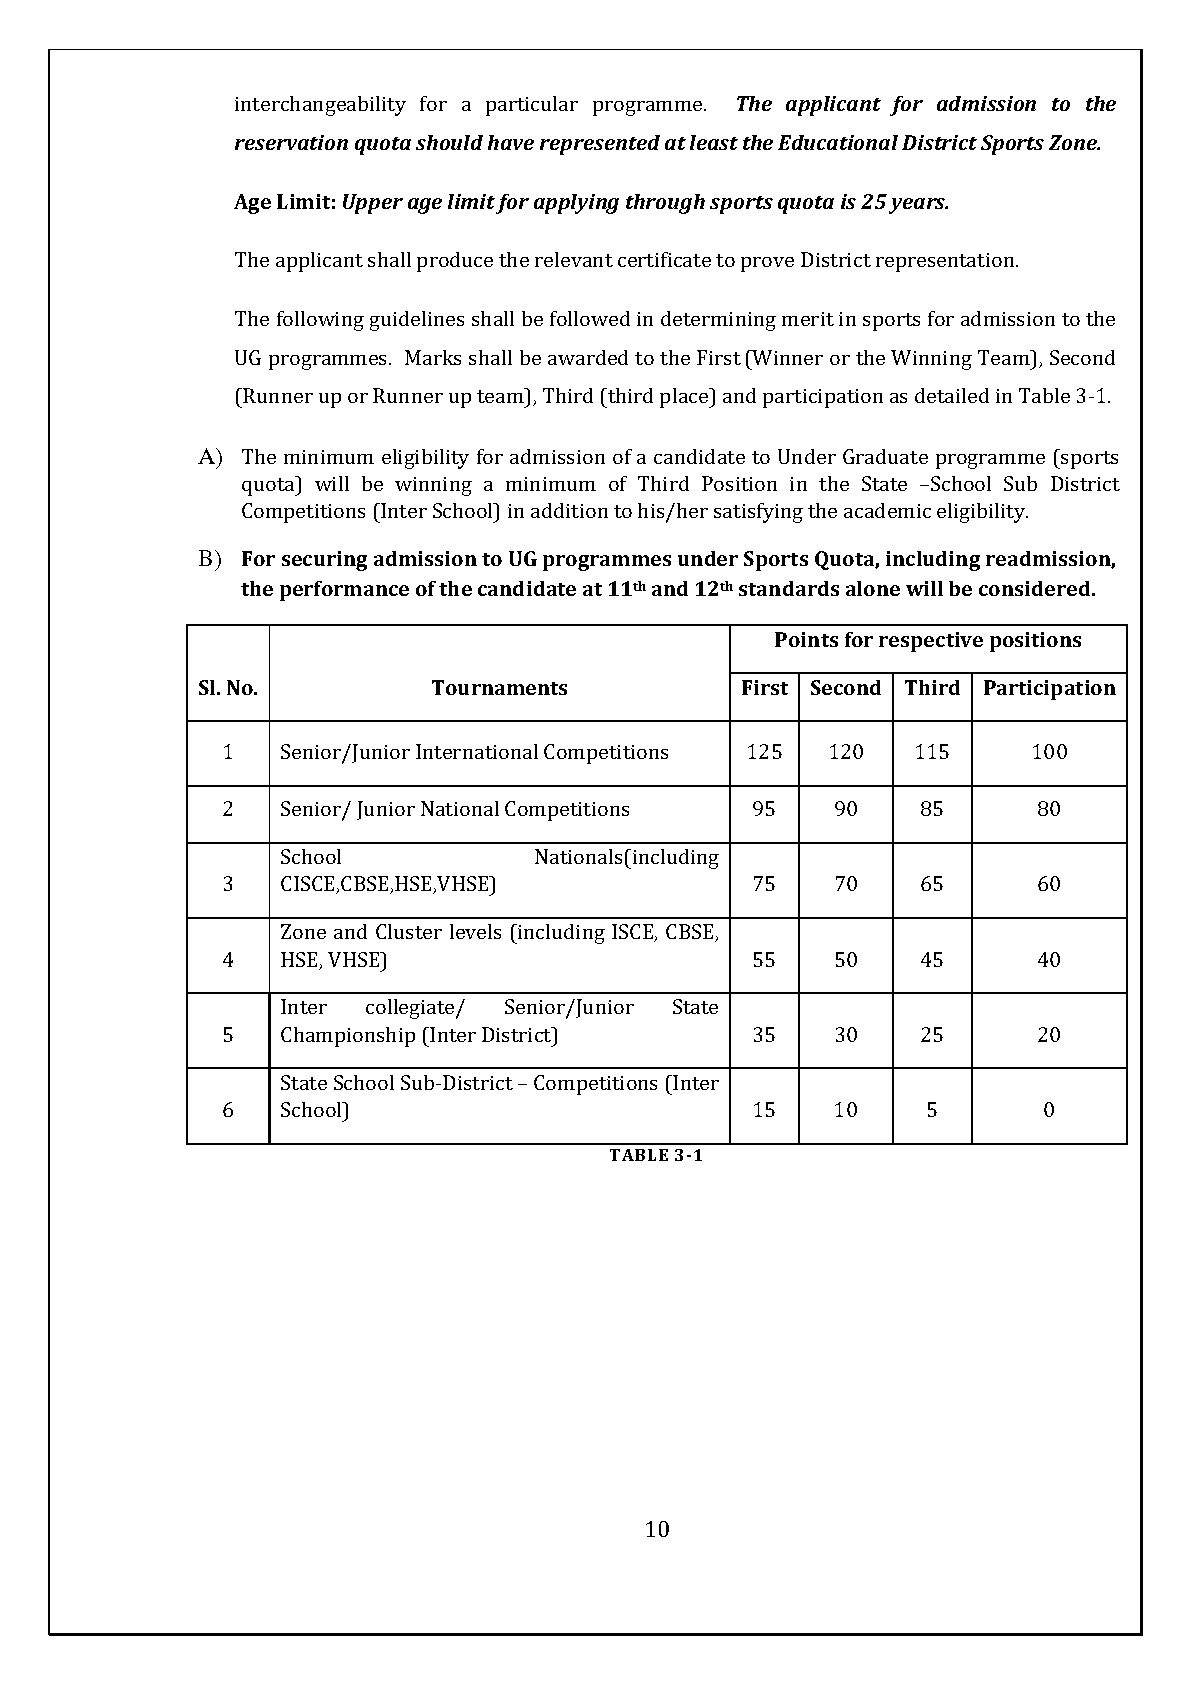 Mahatma Gandhi University Kerala UG Admission 2019 - Notification Image 11